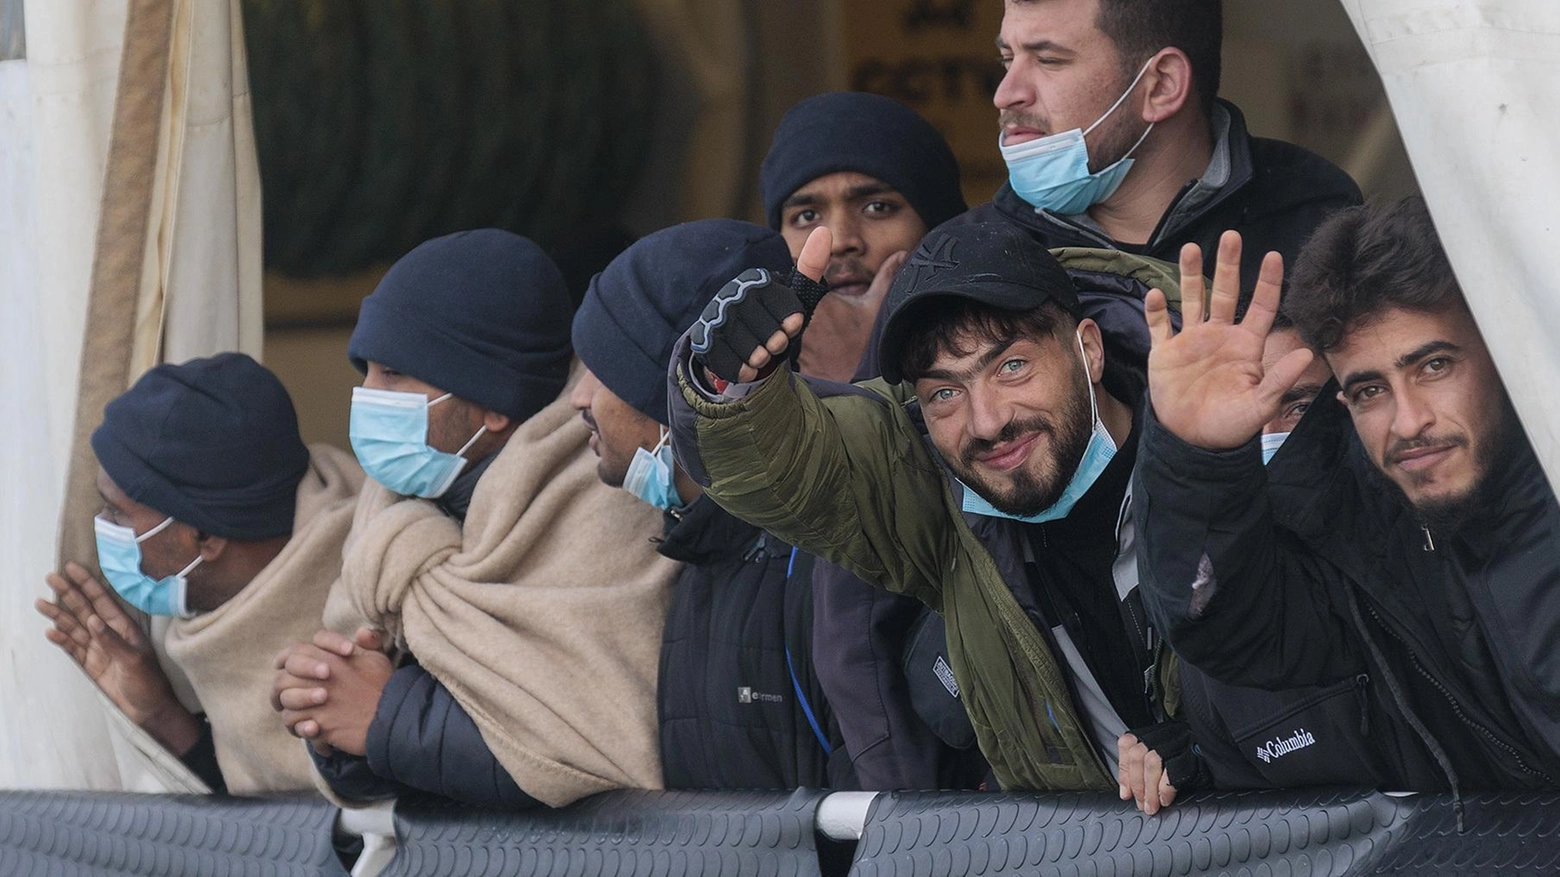 Altri 336 profughi a Ravenna. La rabbia di Comune e Regione: "Noi li aiutiamo, Roma ha fallito"